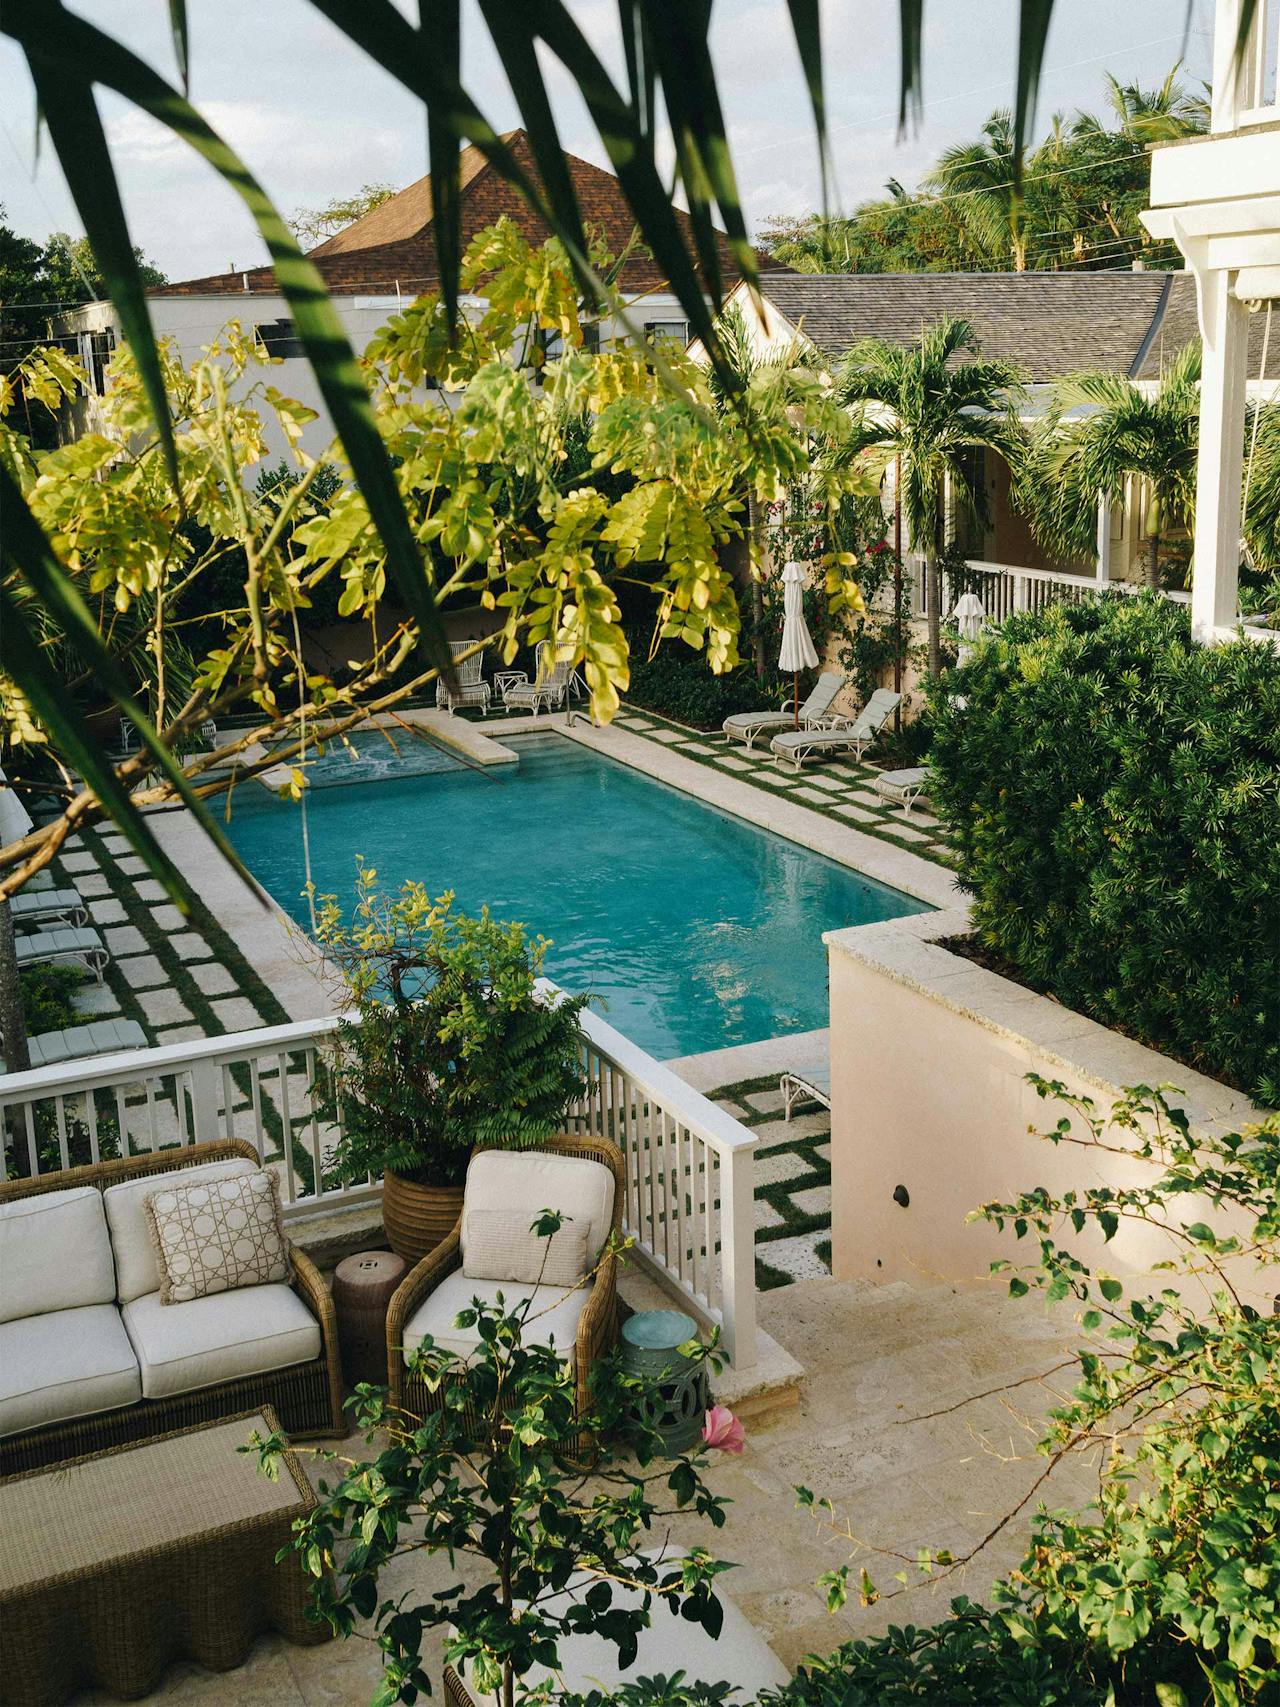 Image: Bahama House Hotel, Bahamas